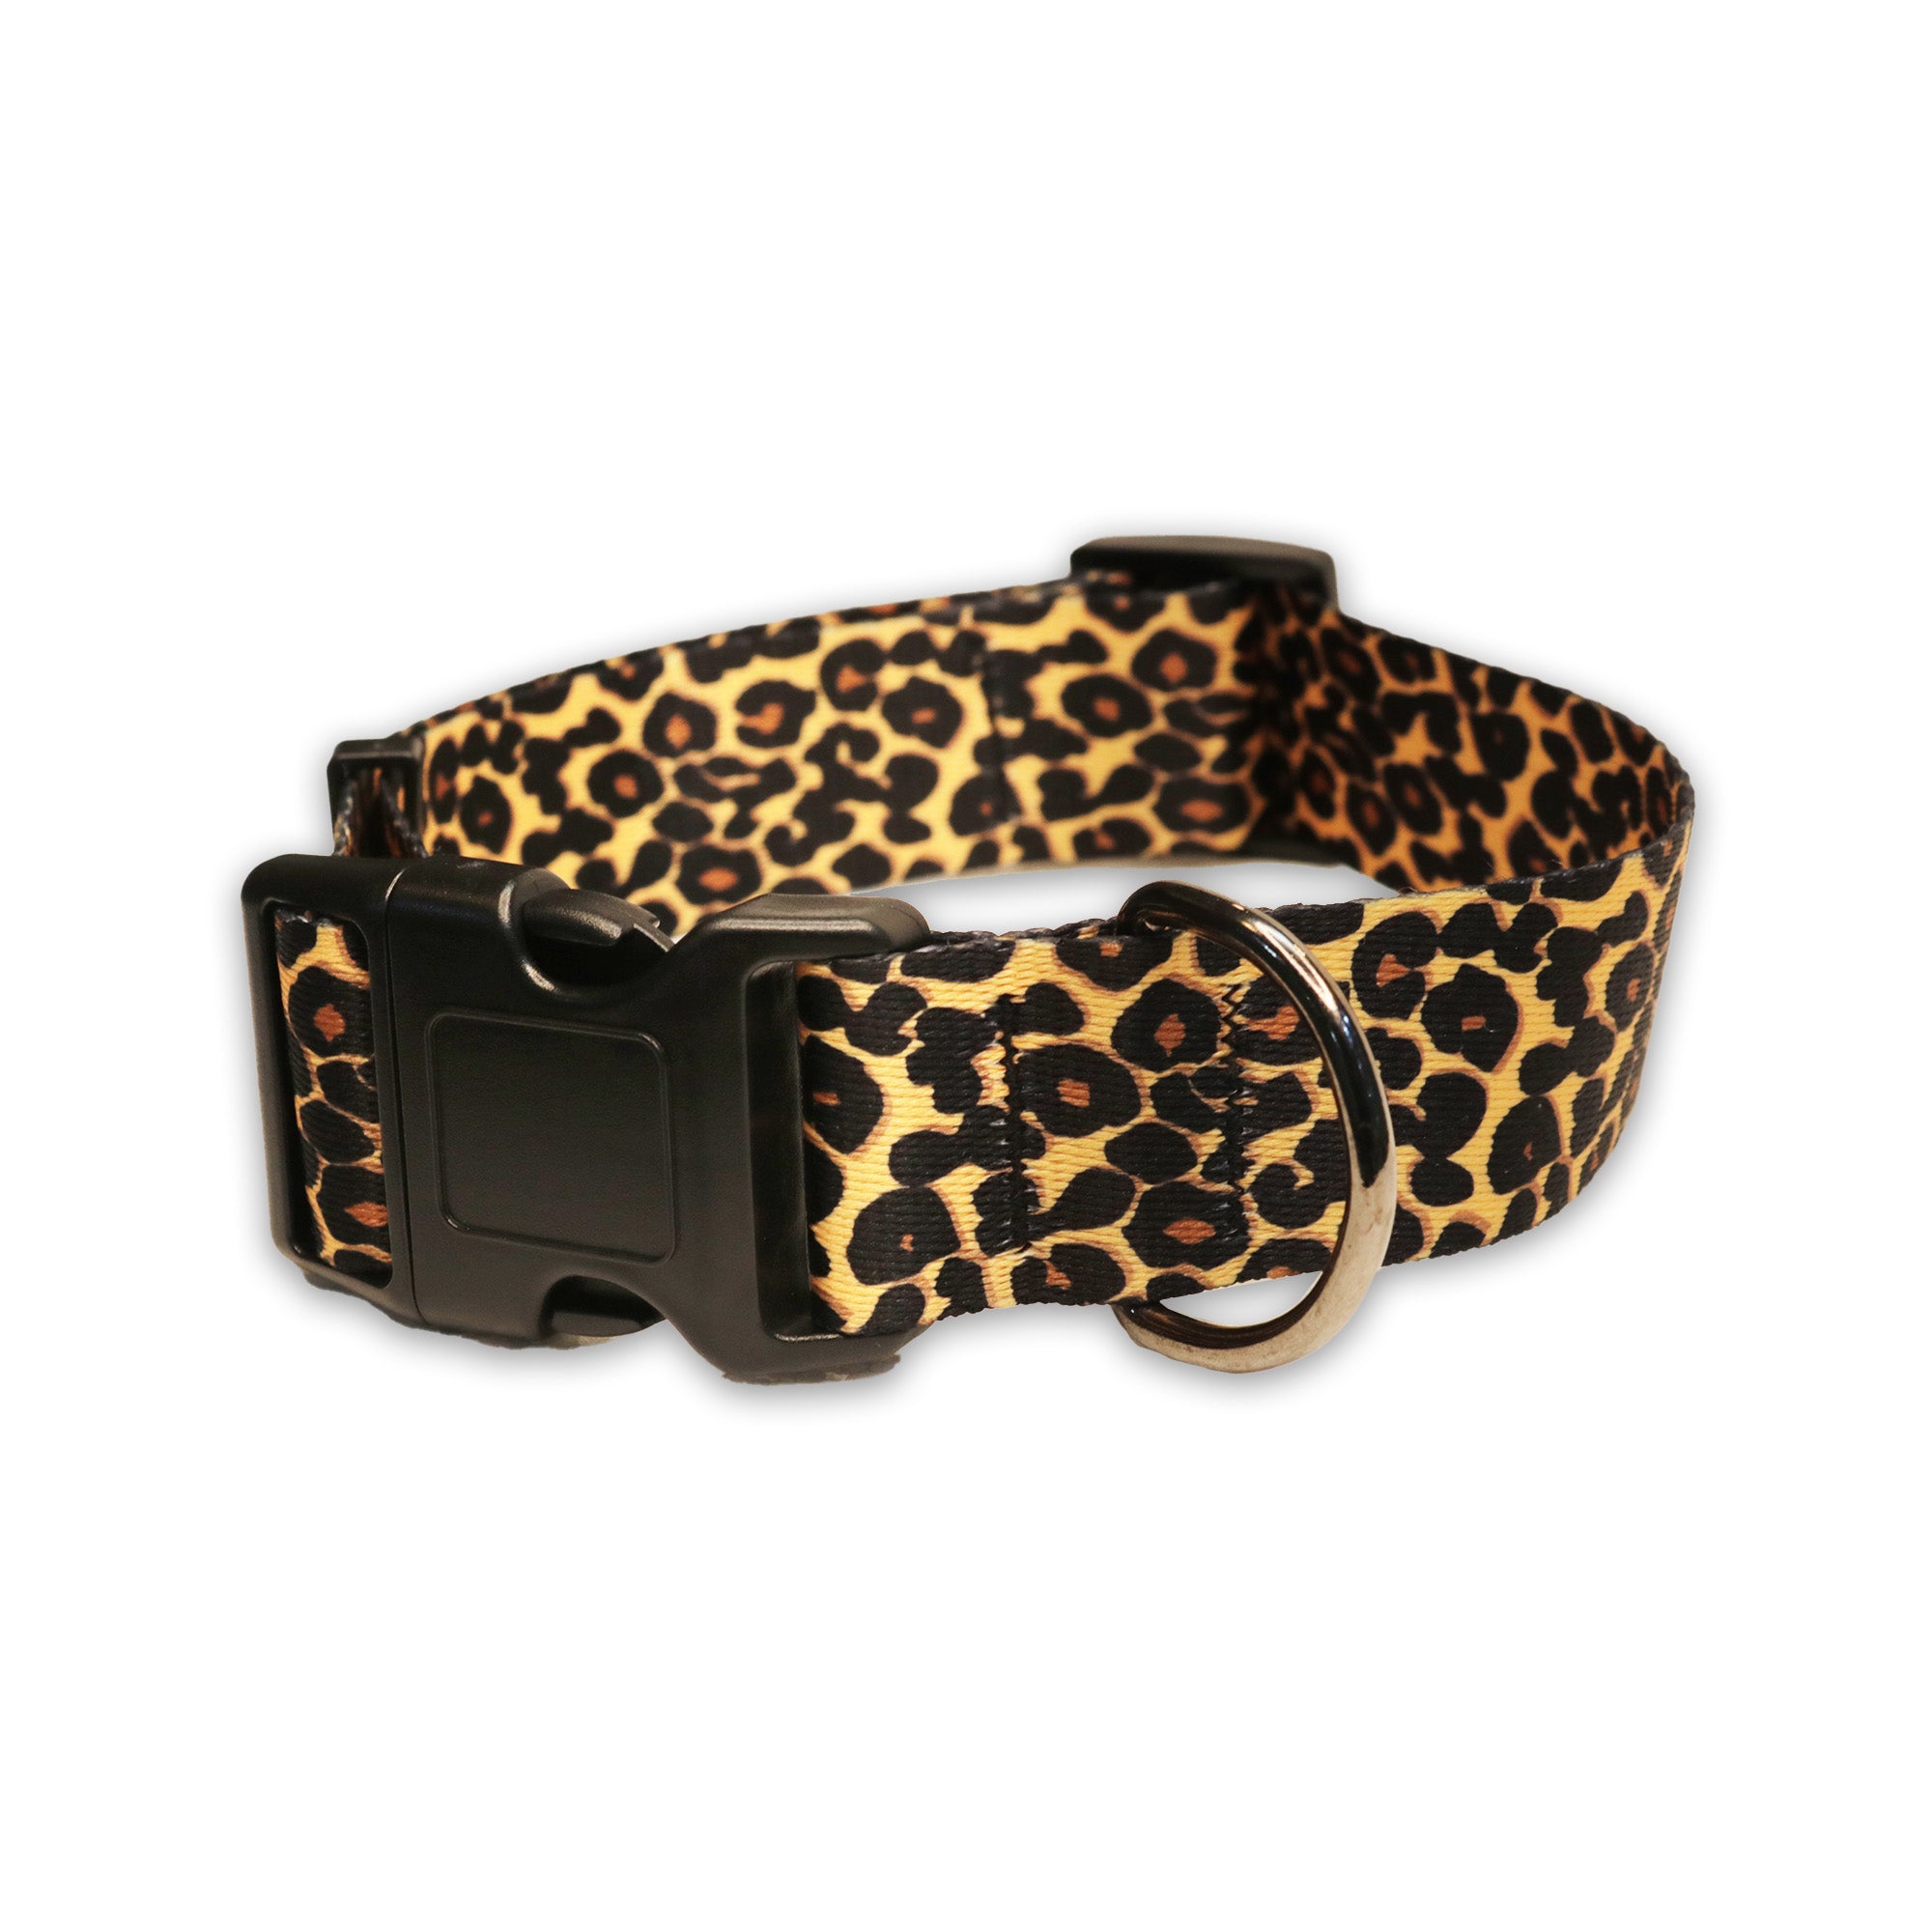 Pawsindia Nylon Dog Collar - Cheetah Print Large-X-Large